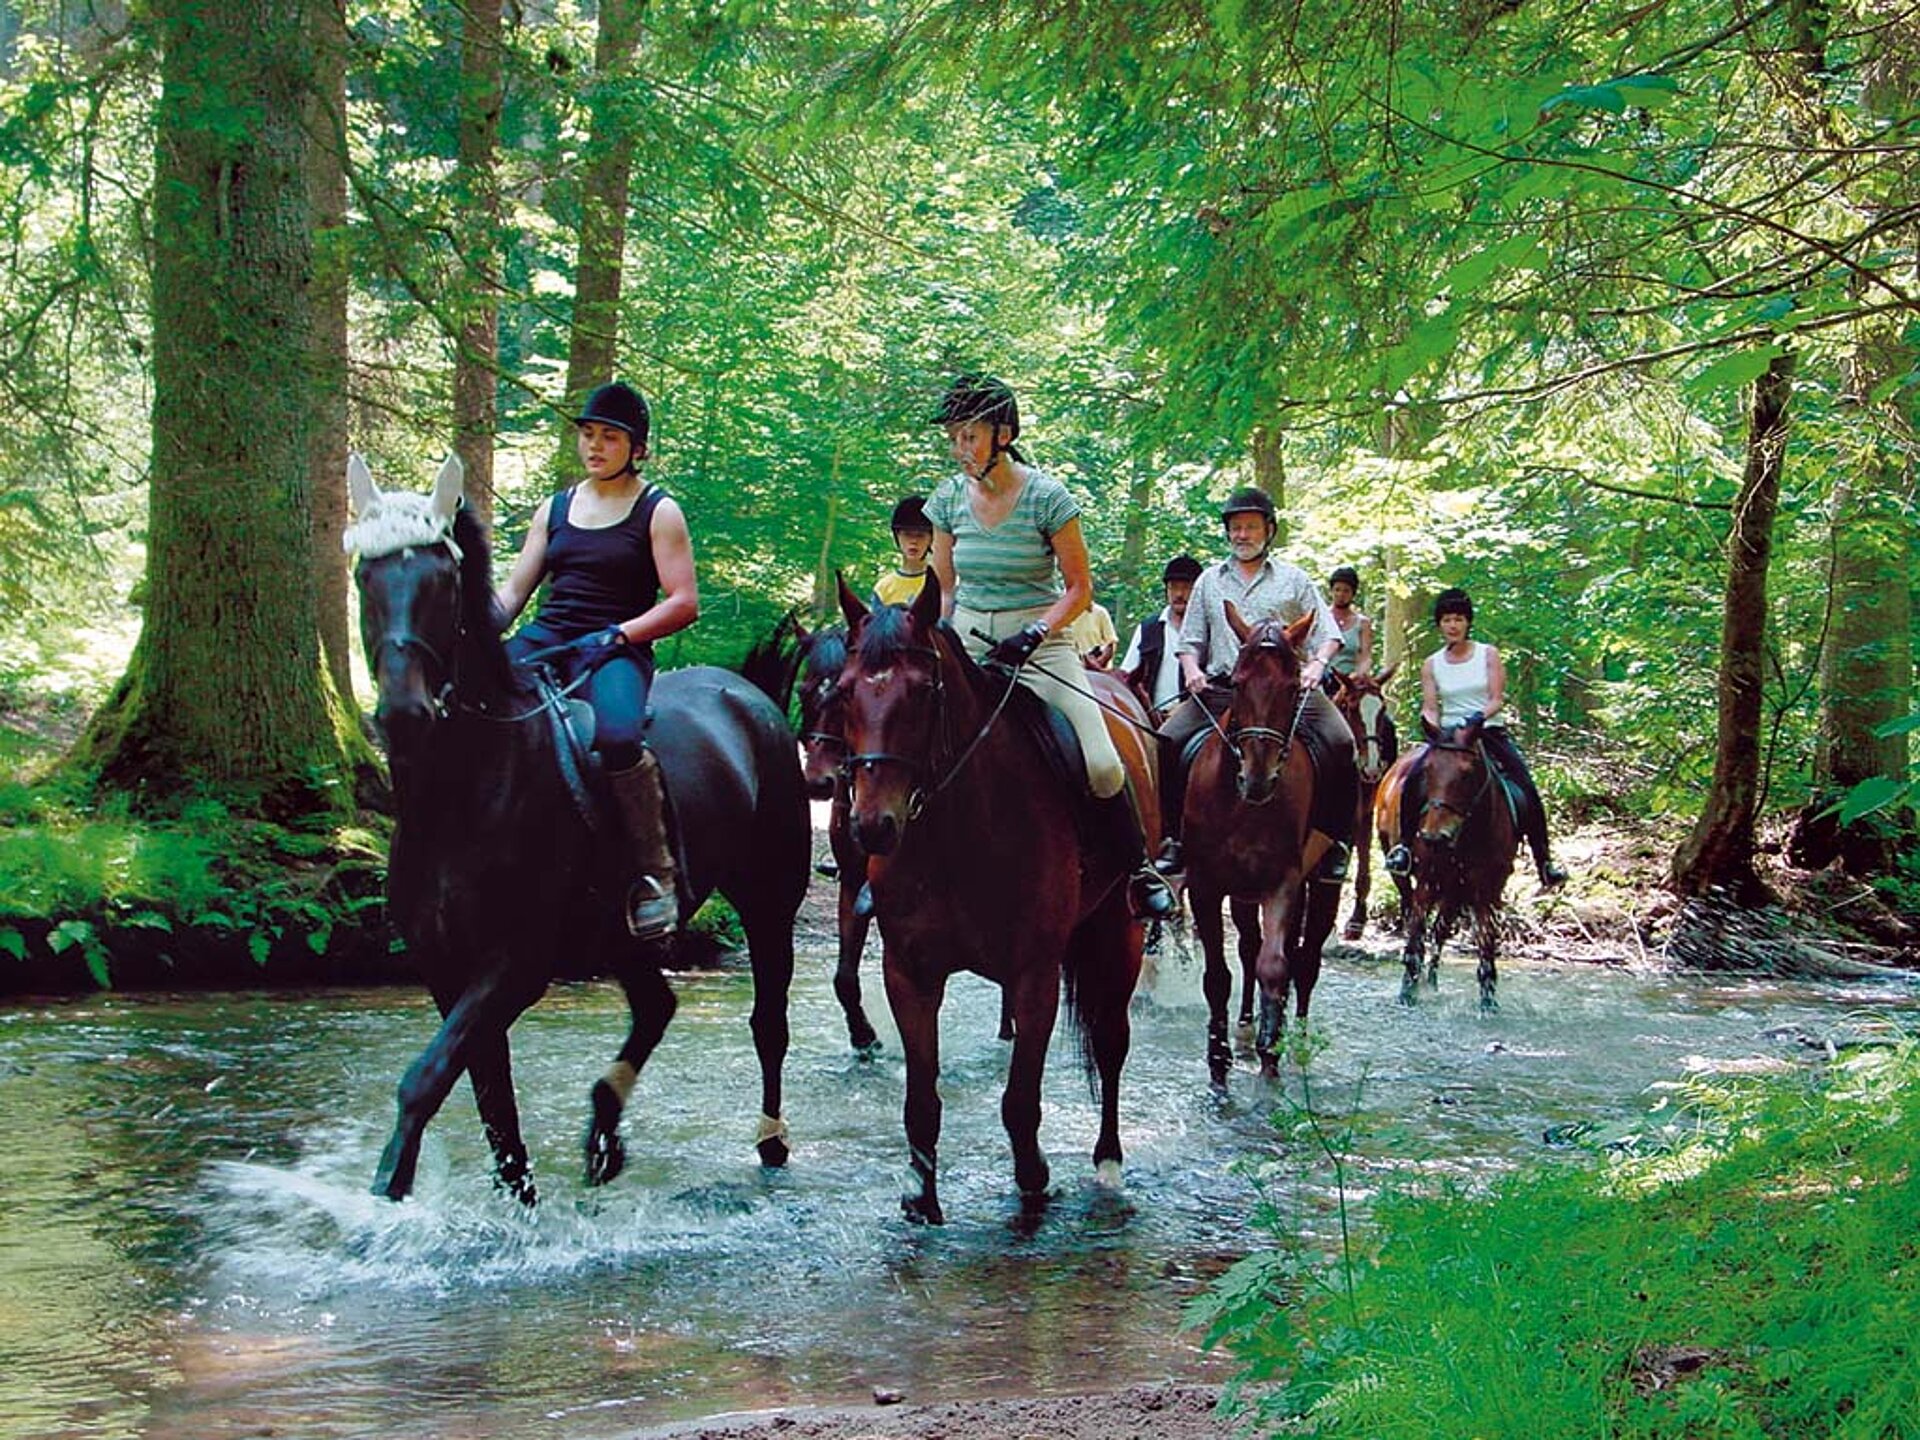 Sieben stolze Reiterinnen und Reiter, Jung und Alt, erkunden durch einen Bach reitend,Wald und Flur.